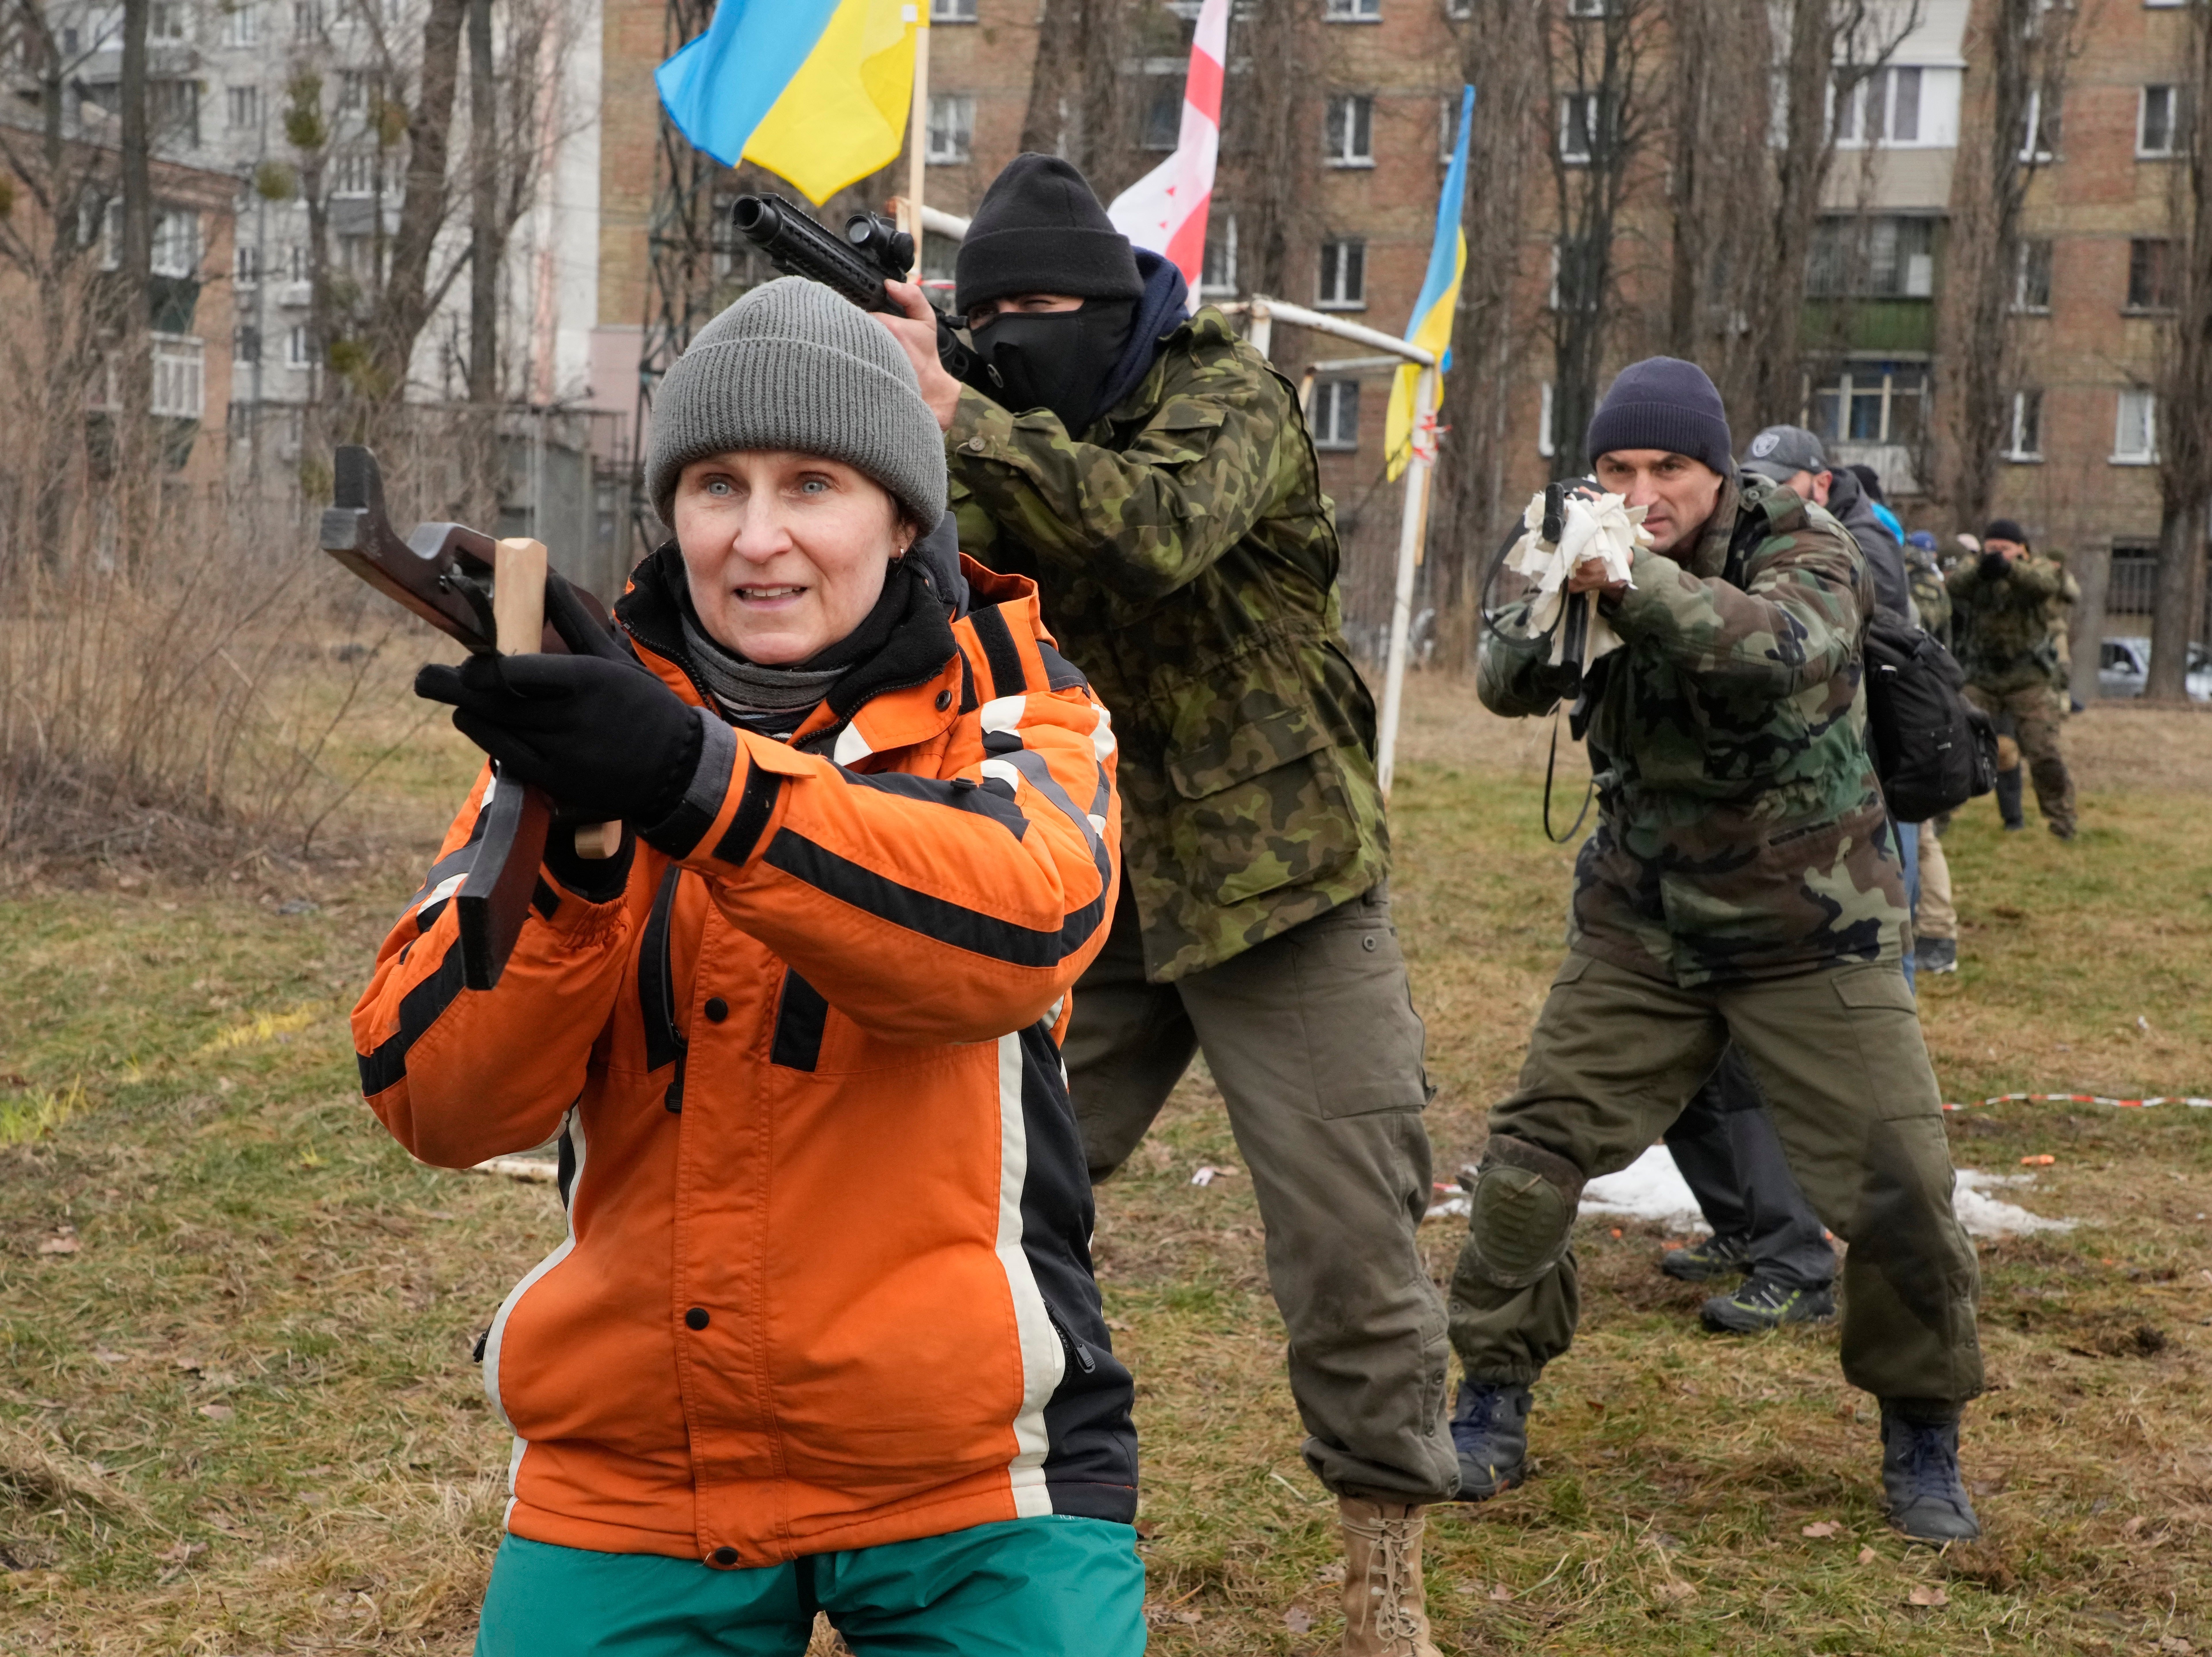 Civiles asisten a un entrenamiento militar con miembros de la Legión Georgiana, una unidad paramilitar formada principalmente por miembros de la etnia georgiana (un país de Europa del Este) para pelear contra la agresión rusa en Ucrania en 2014, en Kiev, Ucrania, el 19 de febrero de 2022